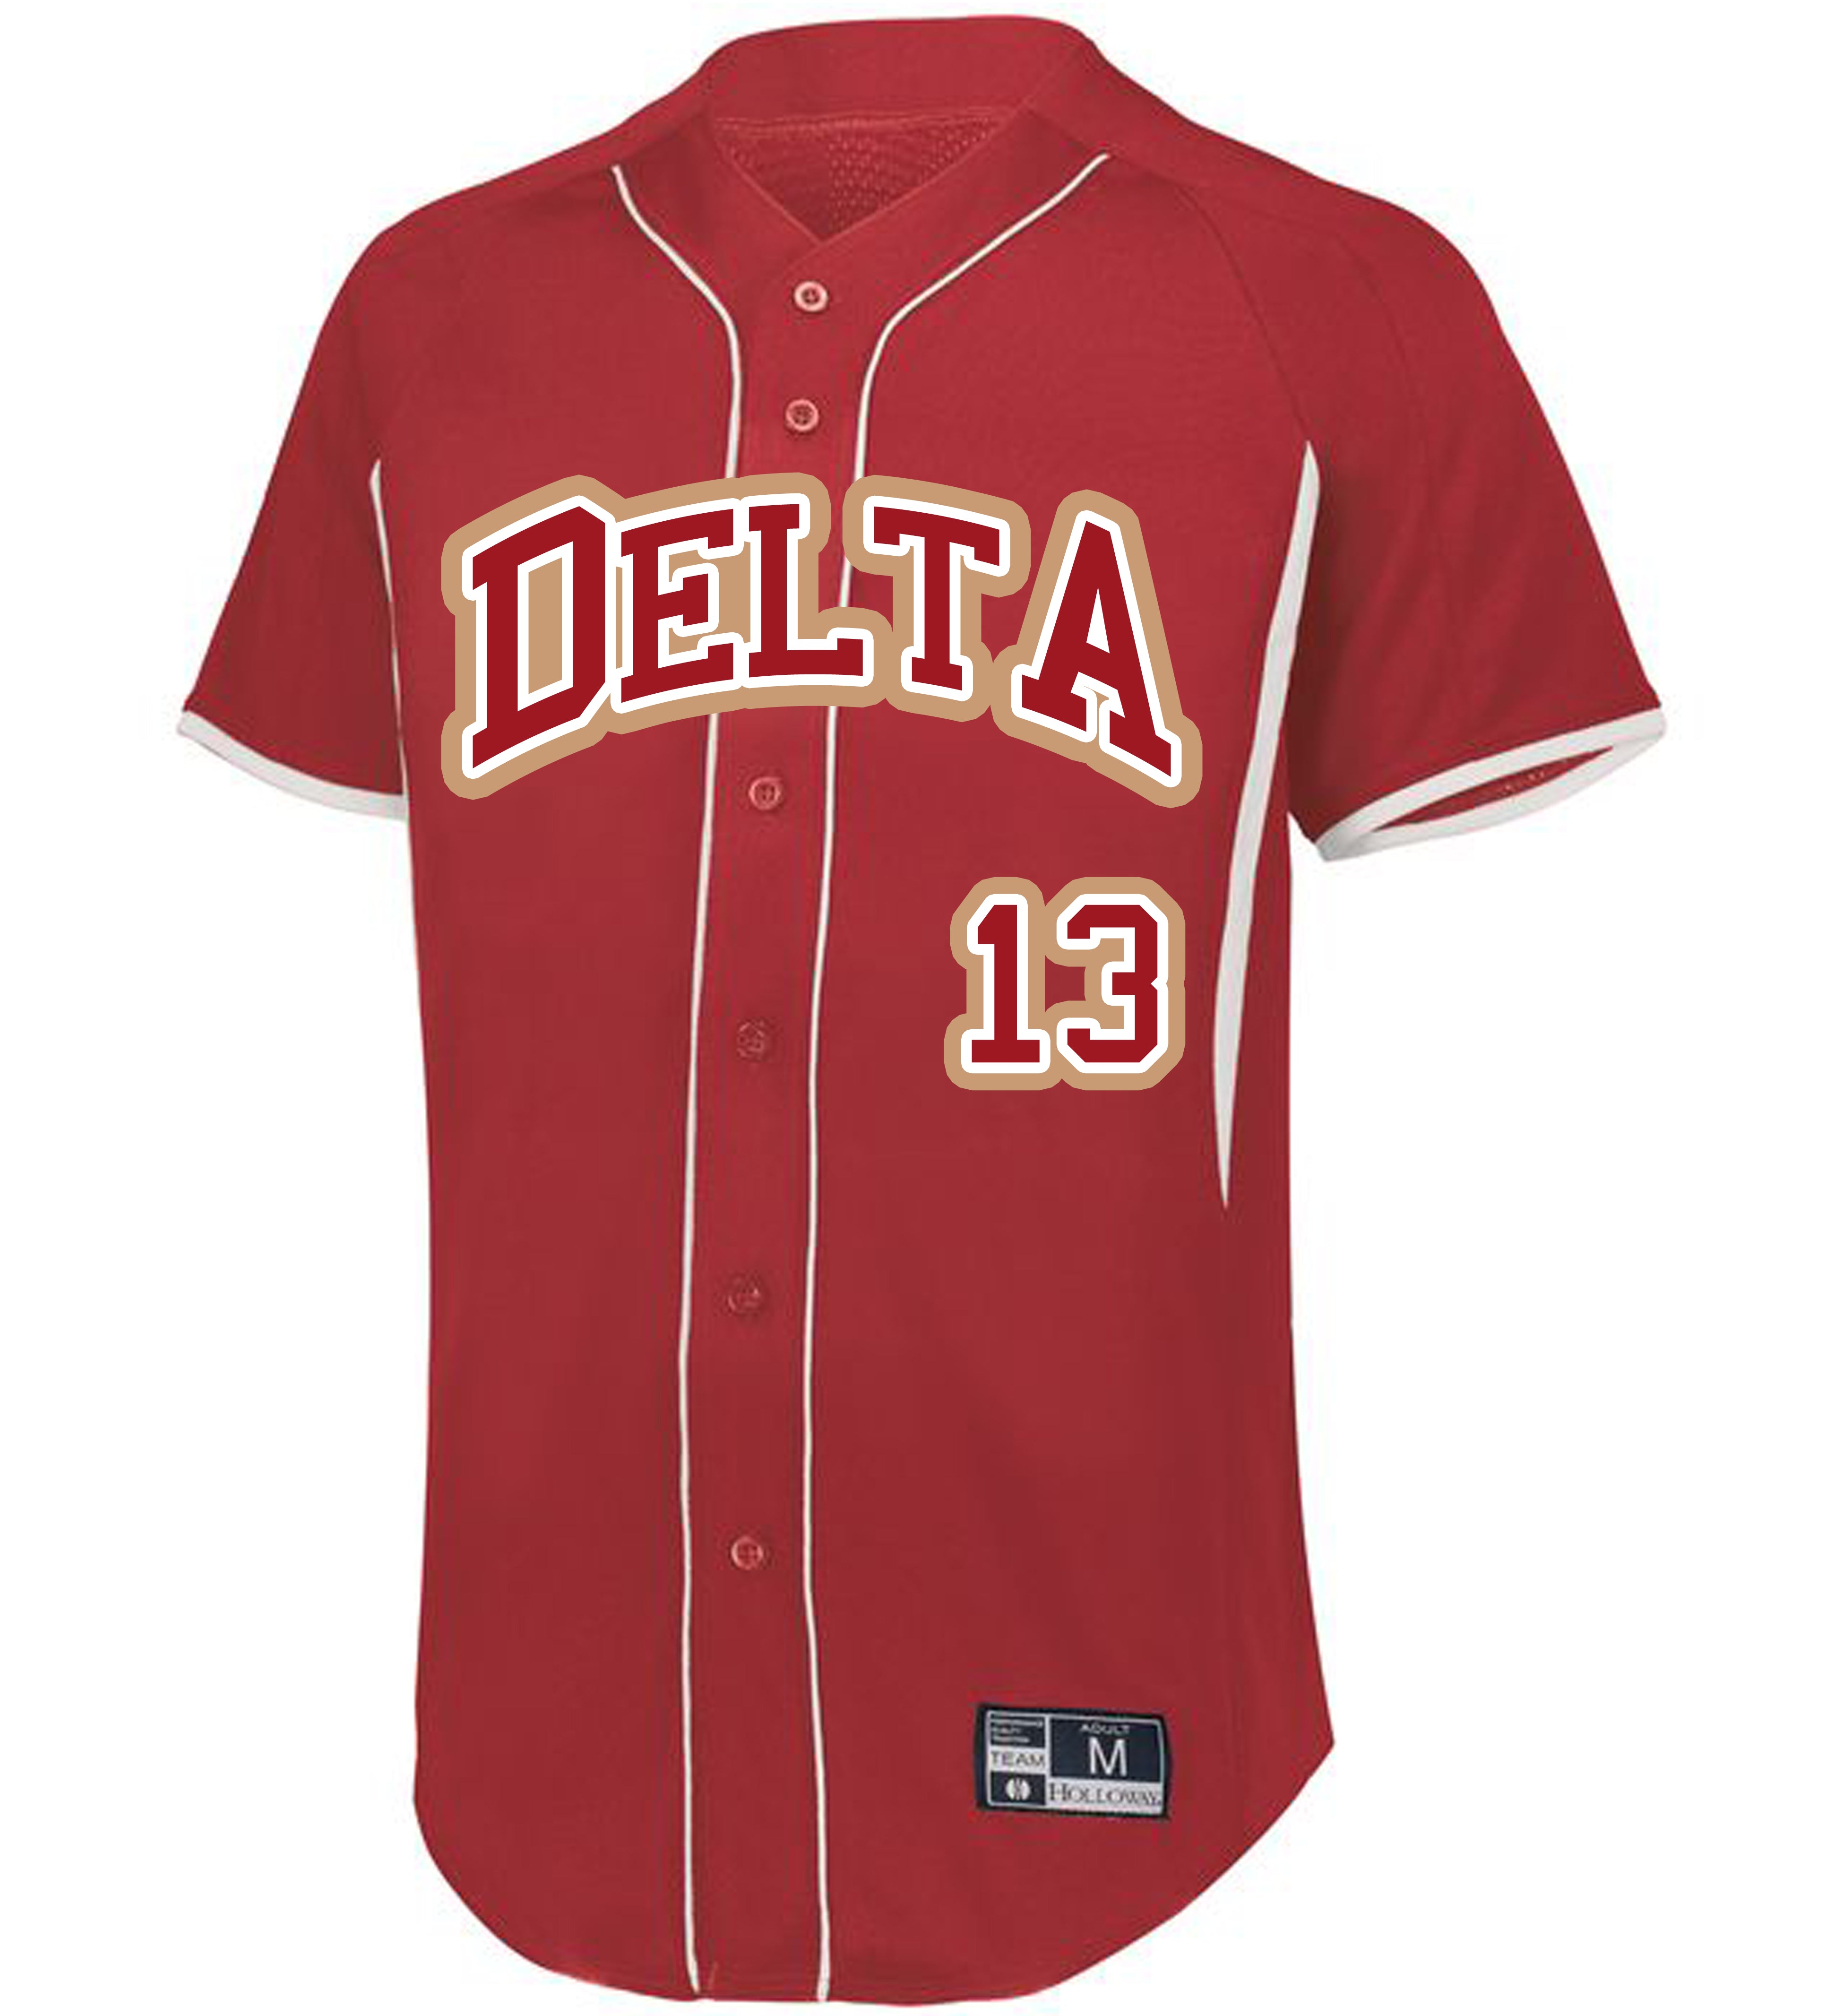 Delta Denim Baseball Jersey